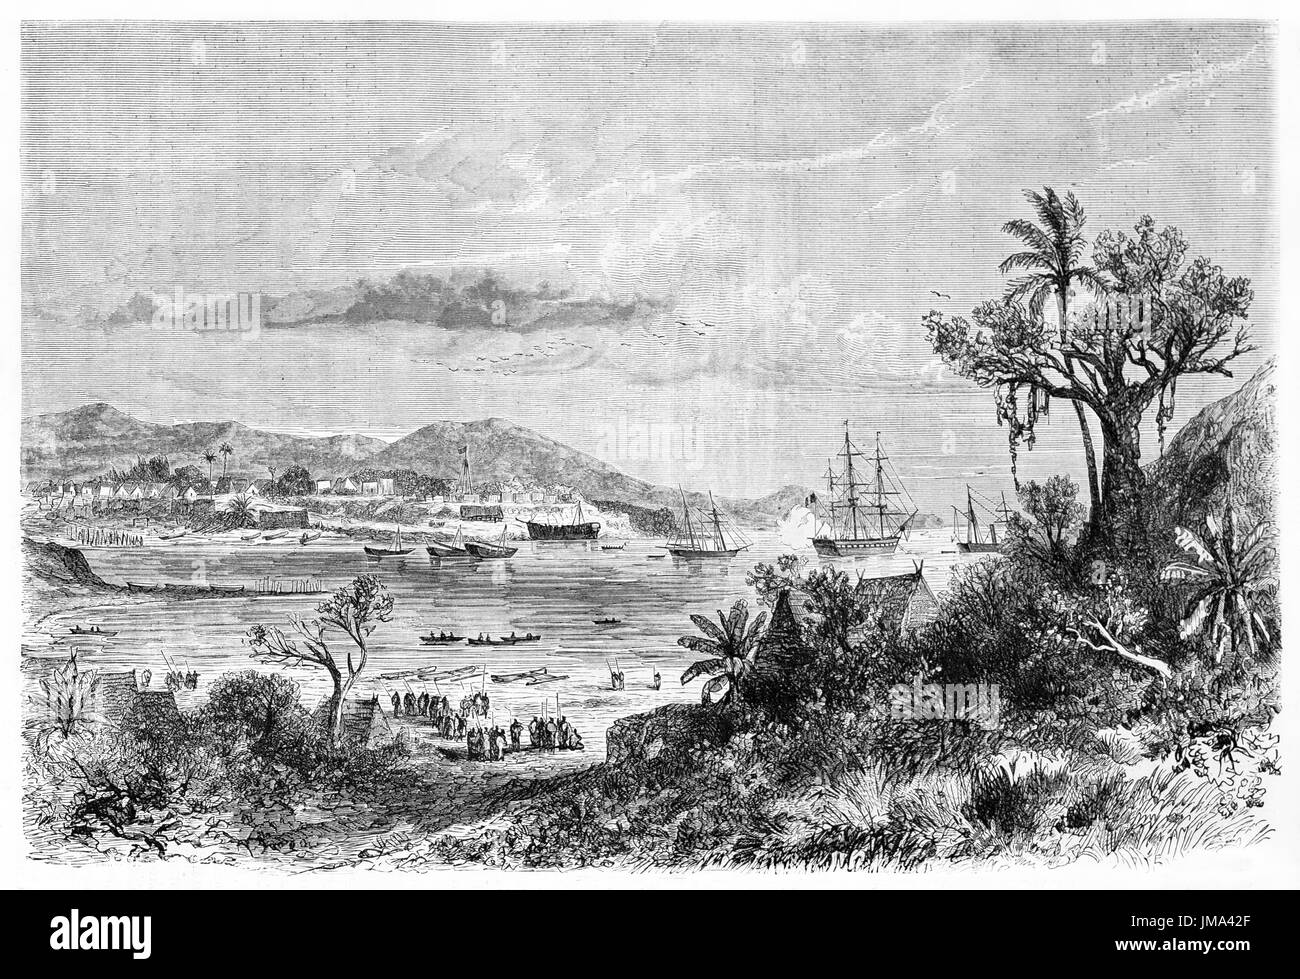 Grand paysage marin avec des navires naviguant sur le golfe de Nosy Be, petite île de la côte nord-ouest de Madagascar. Art de Bérard, le Tour du monde, 1861 Banque D'Images